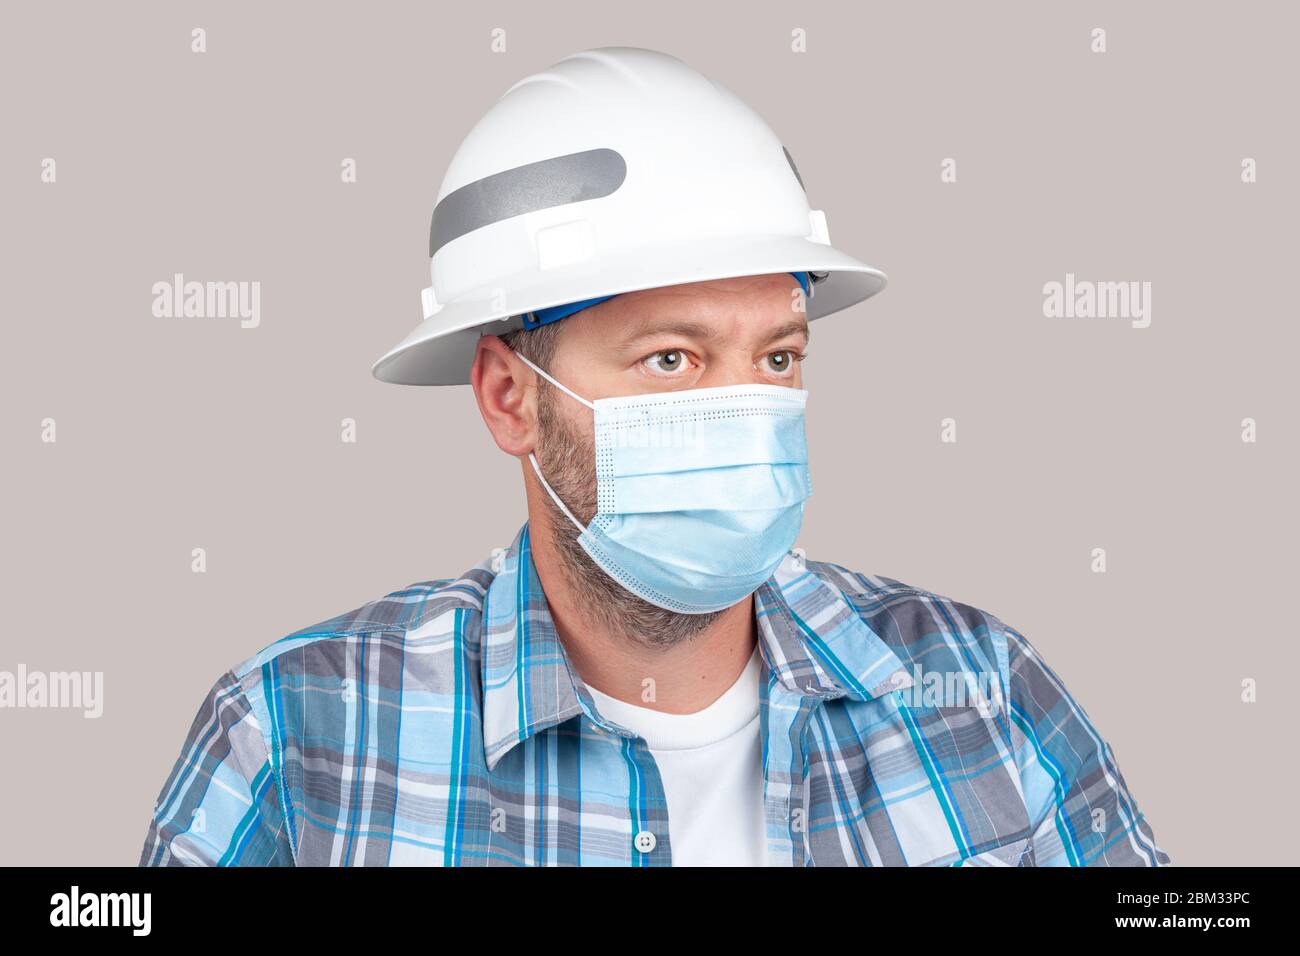 Ingenieur oder Bauarbeiter mit Freizeitkleidung und Sicherheit harten Hut trägt chirurgische Gesichtsmaske. Konzept der neuen Sicherheitsmaßnahmen von Unternehmen Stockfoto